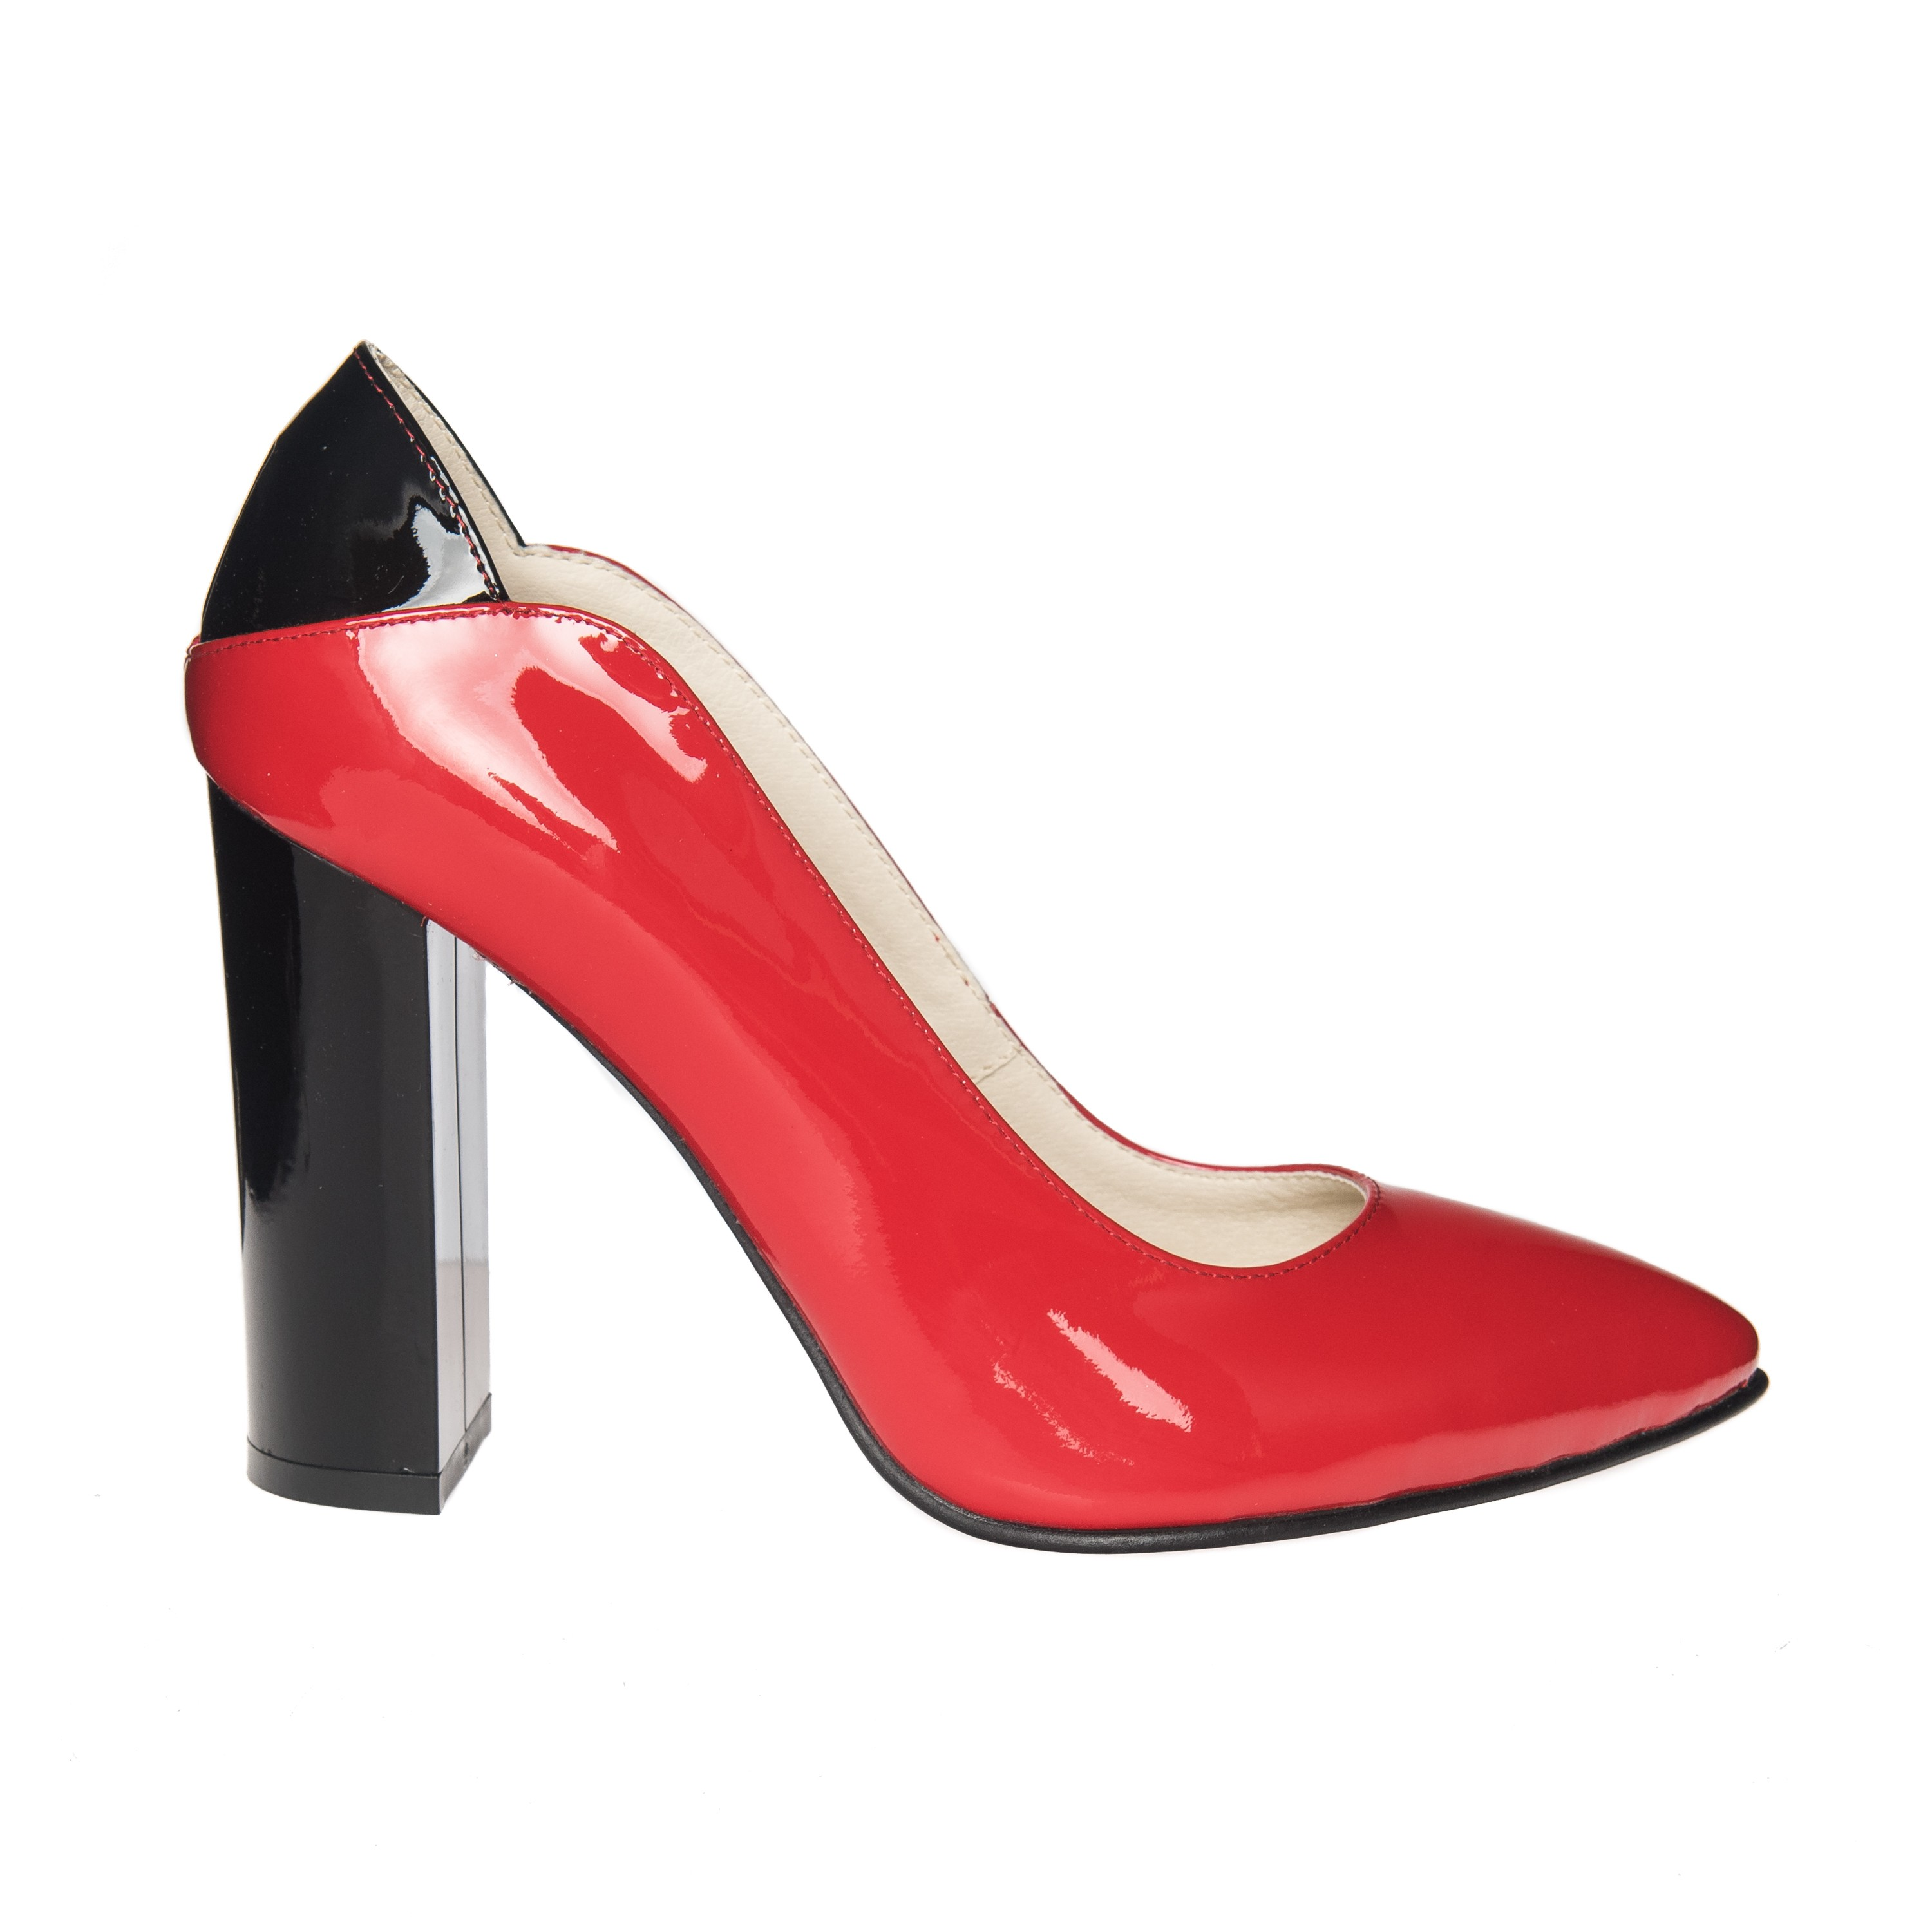 Pantofi dama din piele naturala - Rosu cu negru lac - R9 RNL